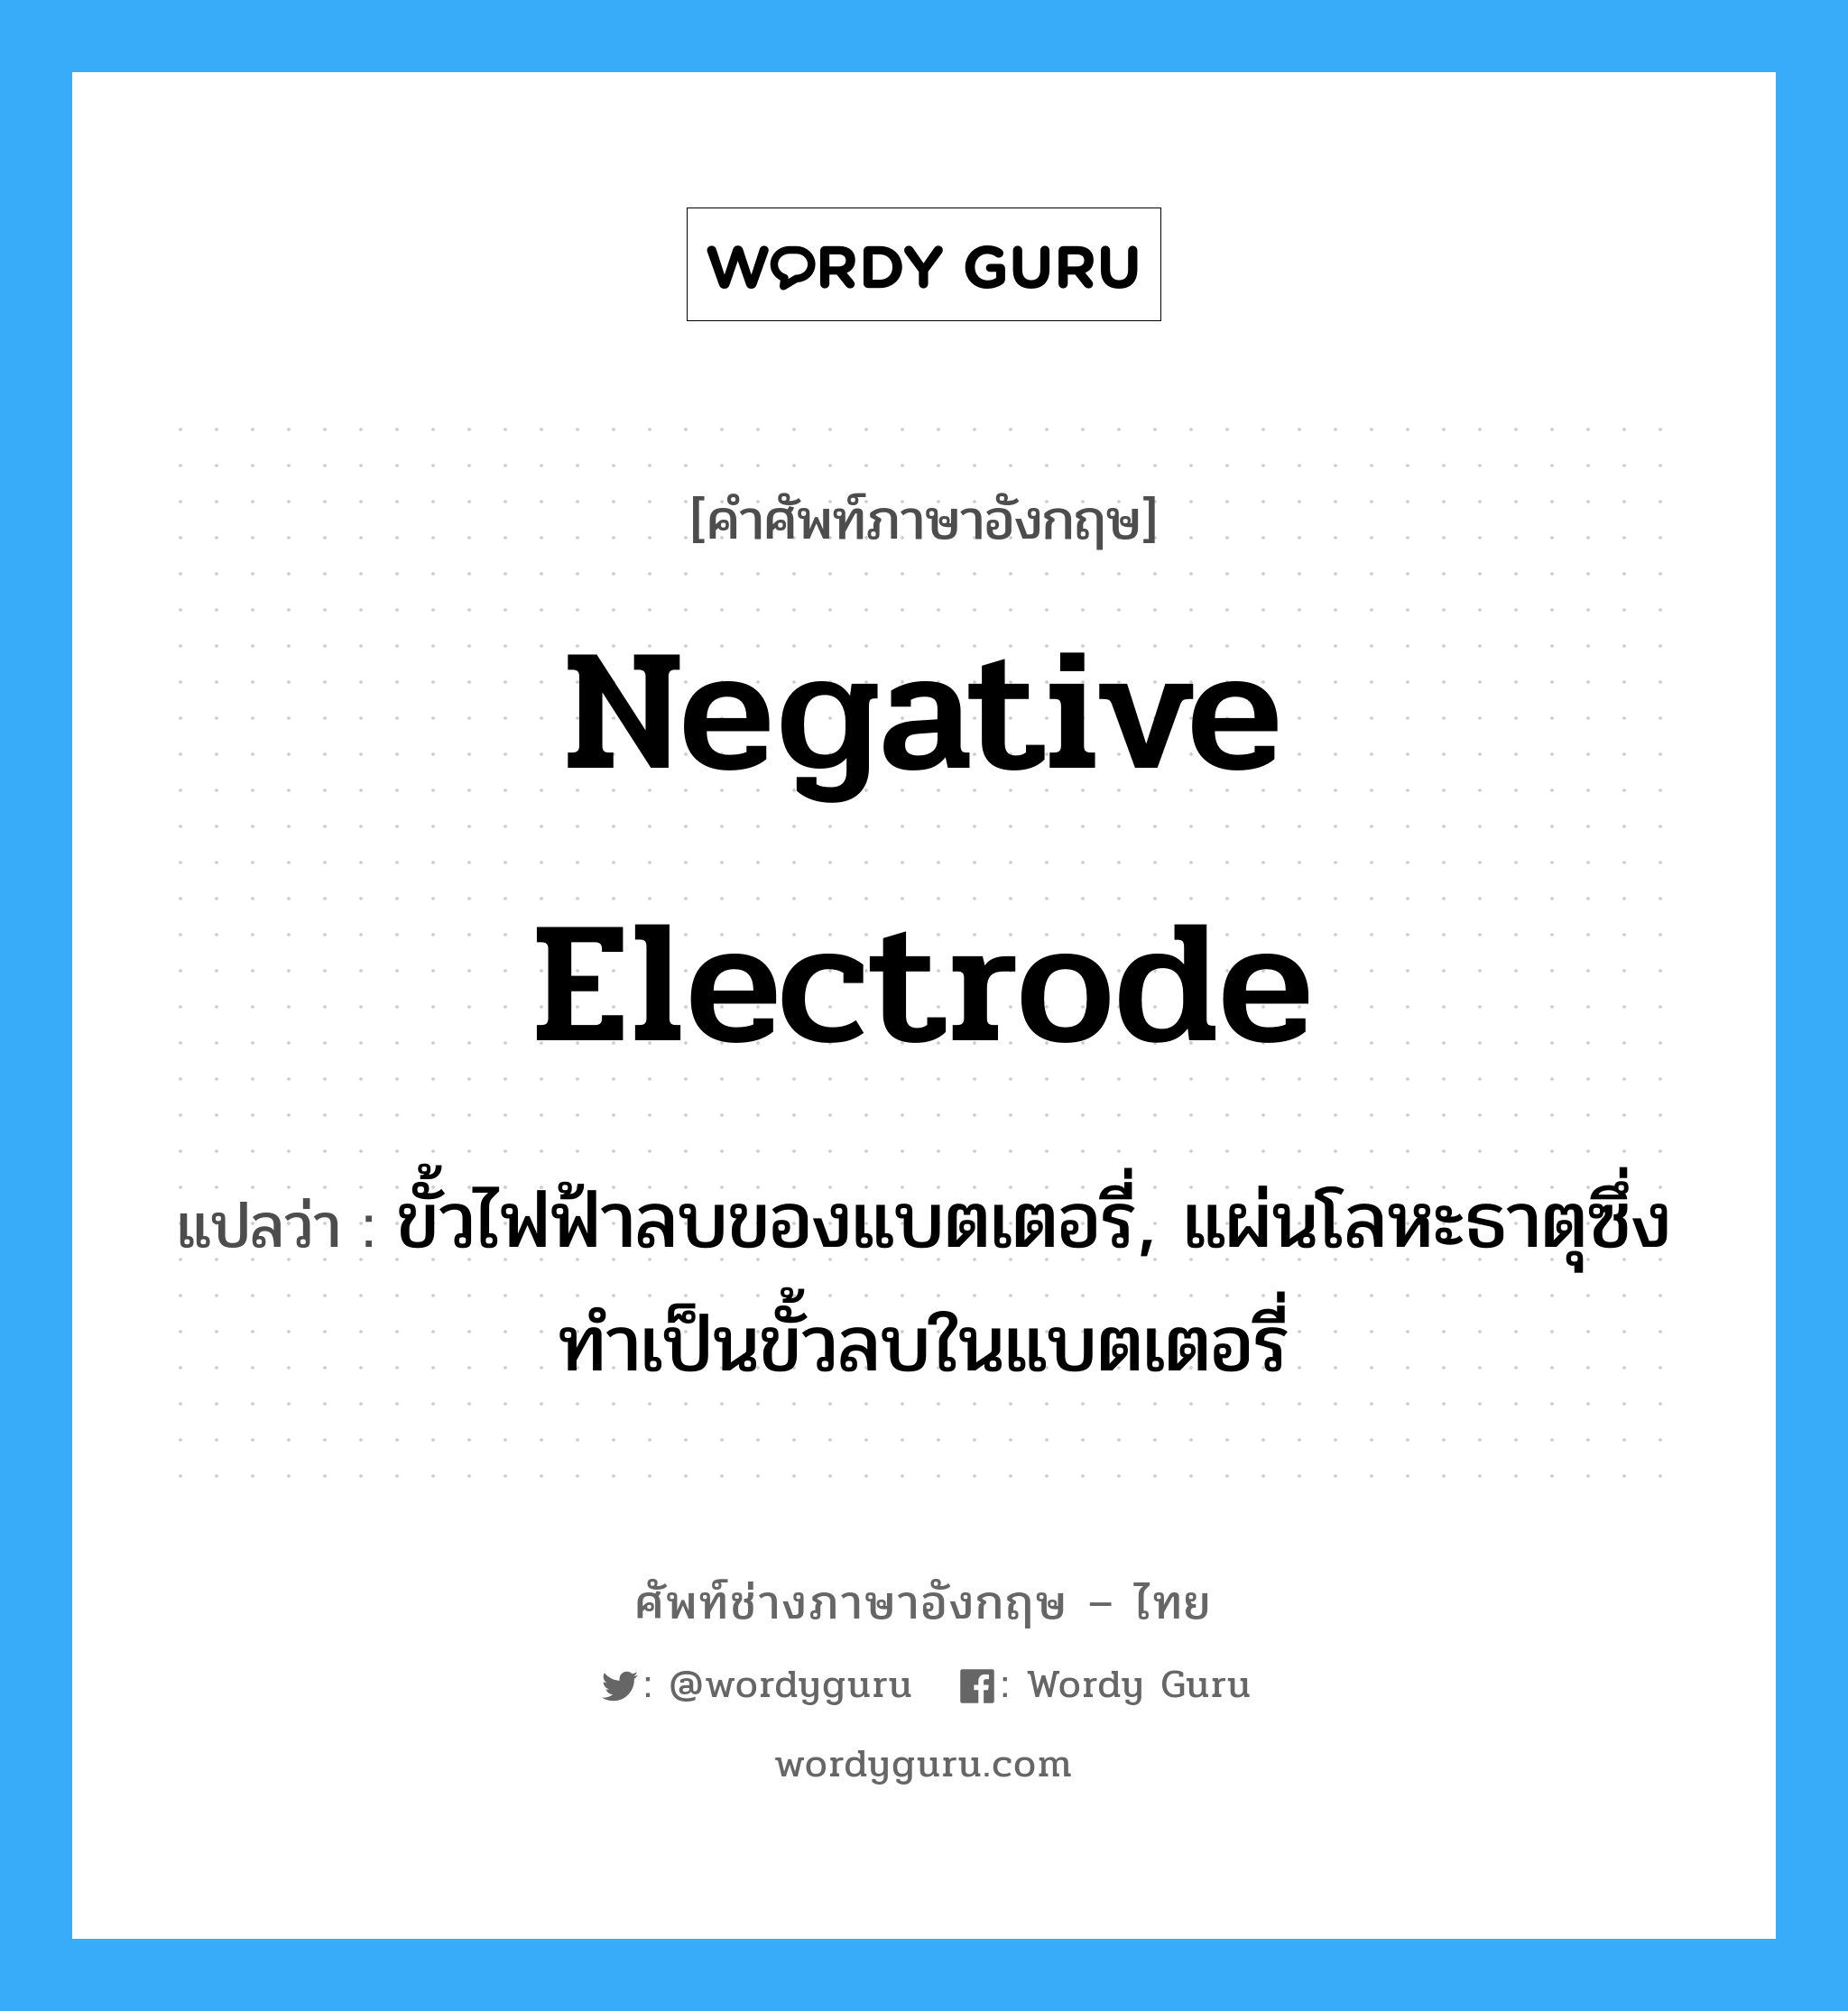 negative electrode แปลว่า?, คำศัพท์ช่างภาษาอังกฤษ - ไทย negative electrode คำศัพท์ภาษาอังกฤษ negative electrode แปลว่า ขั้วไฟฟ้าลบของแบตเตอรี่, แผ่นโลหะธาตุซึ่งทำเป็นขั้วลบในแบตเตอรี่